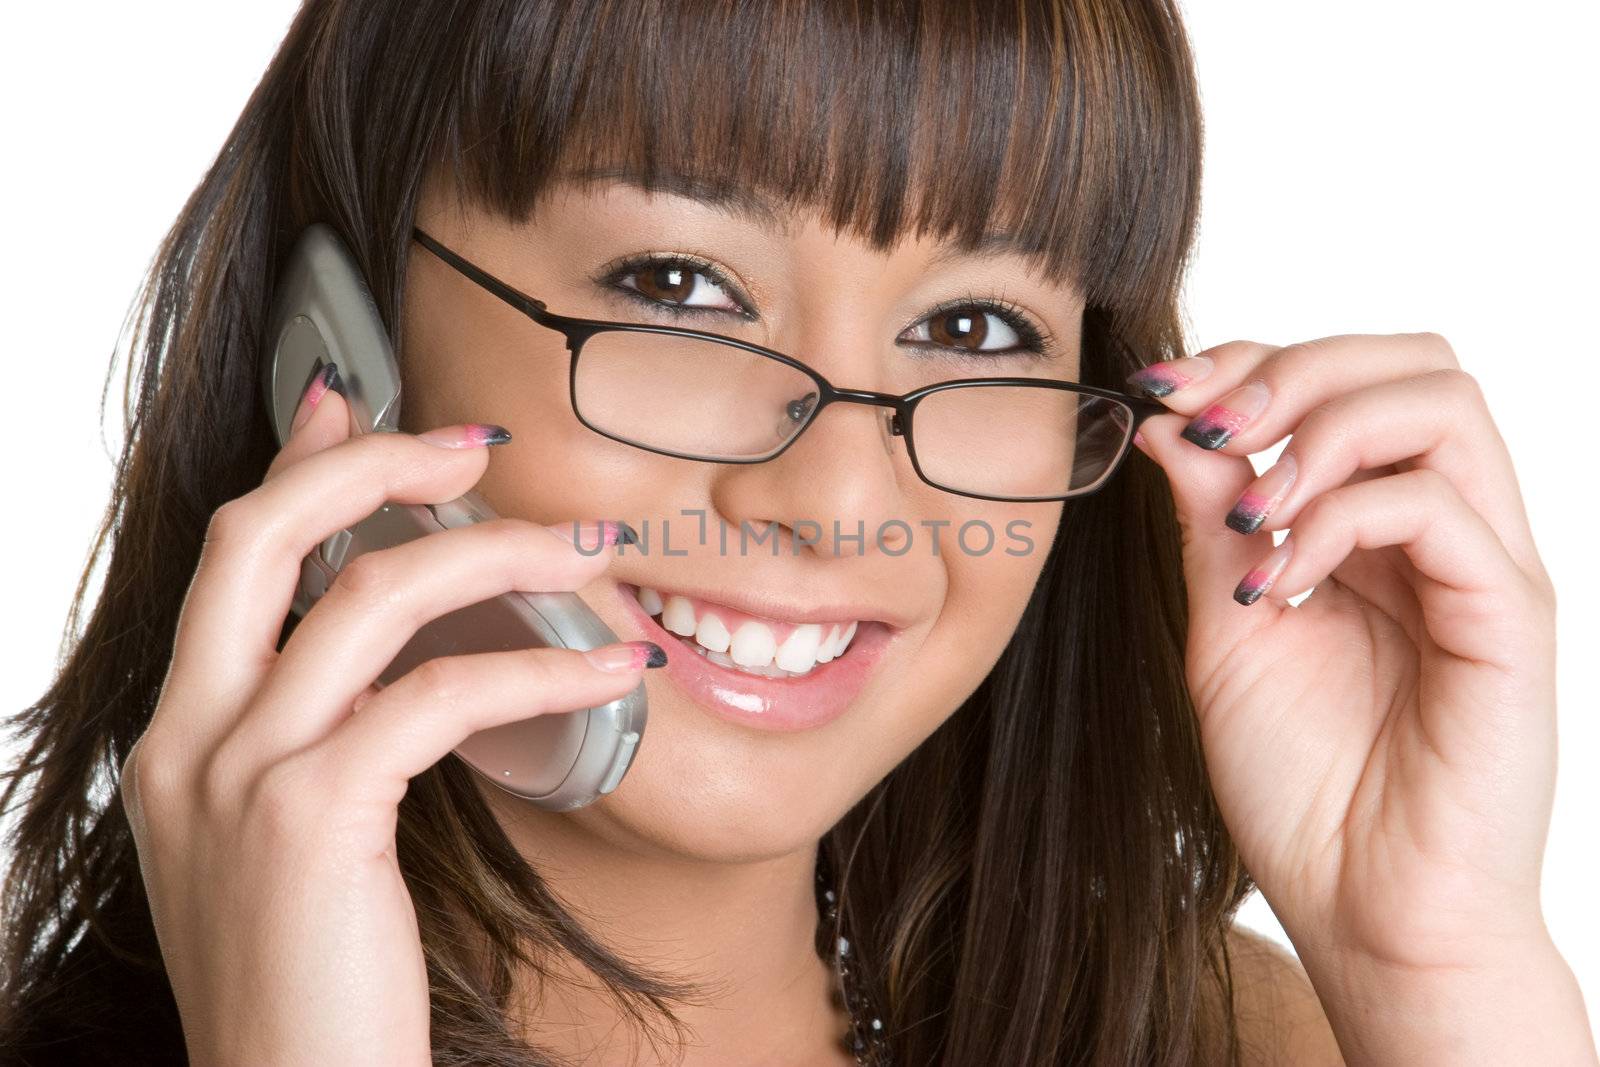 Smiling Phone Woman by keeweeboy